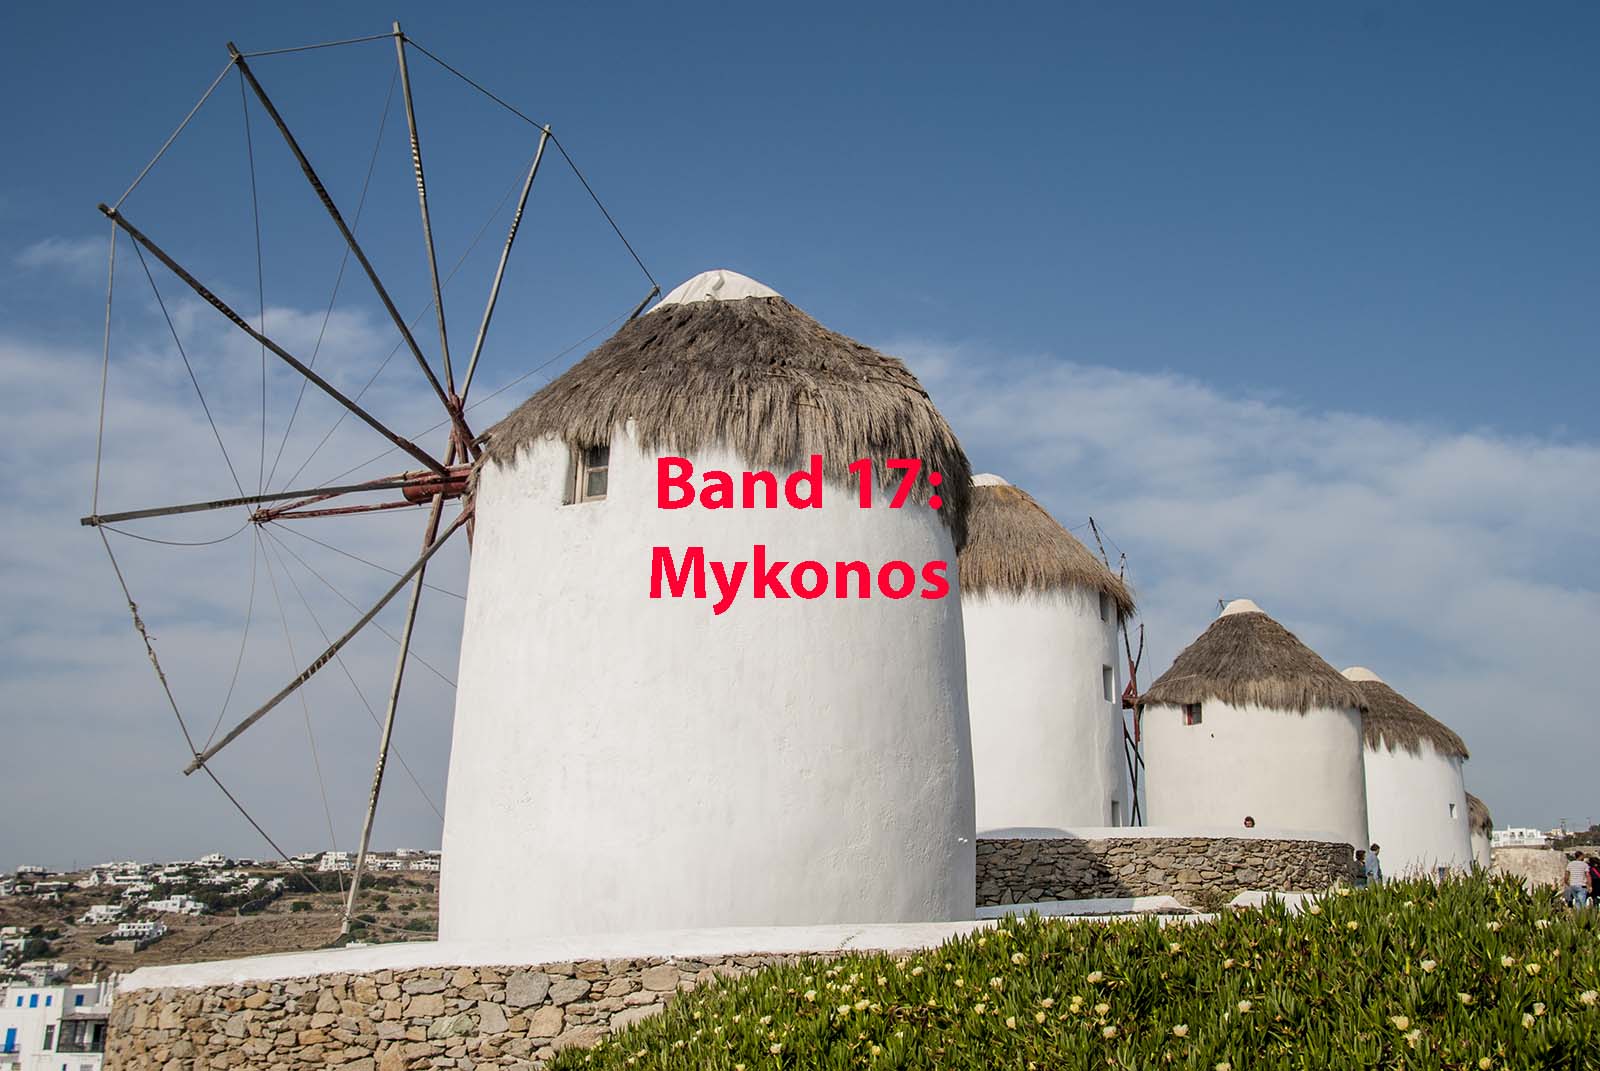 Europa – Mykonos